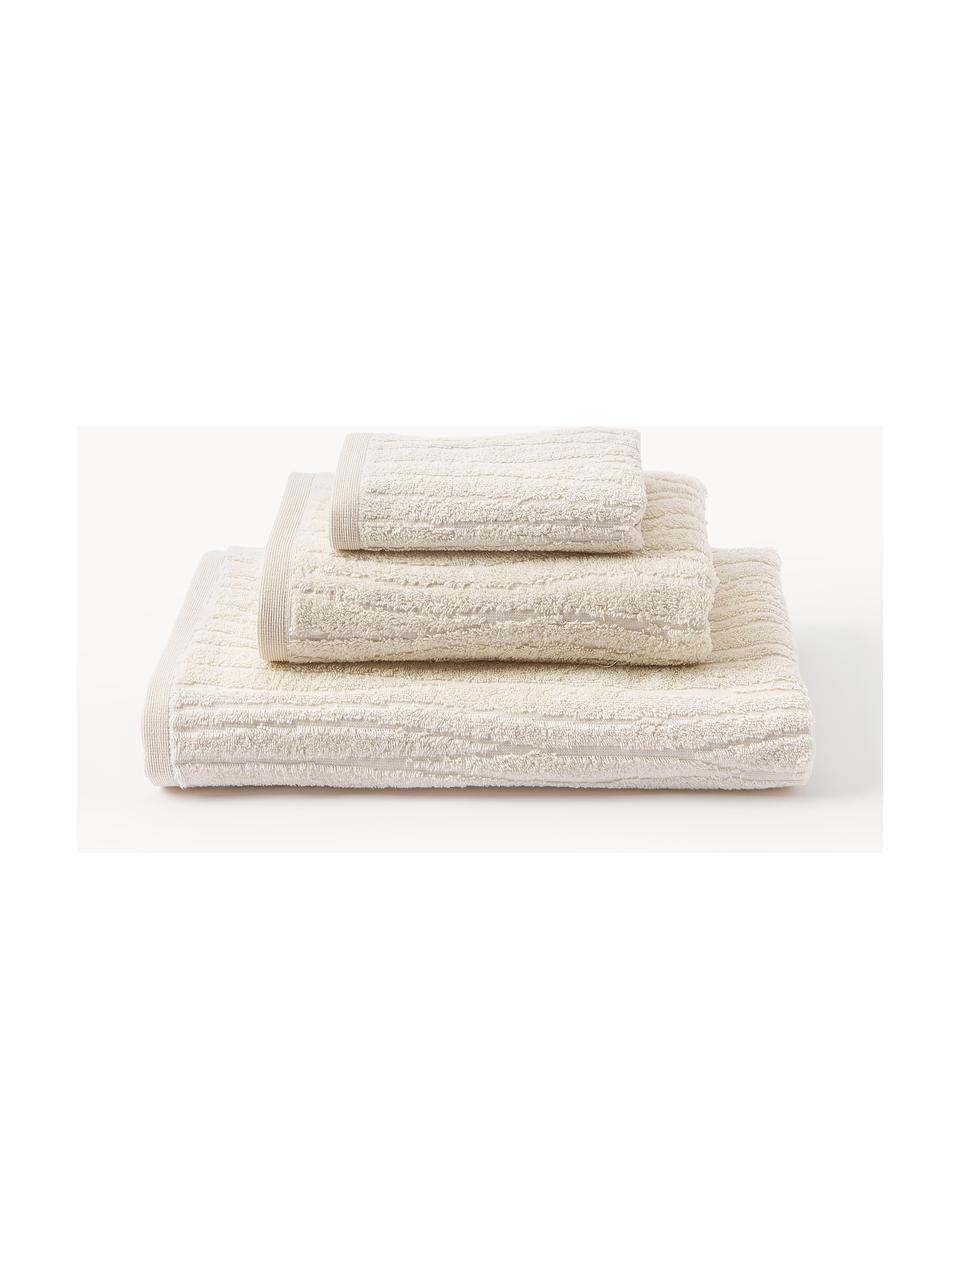 Komplet ręczników Audrina, różne rozmiary, Jasny beżowy, 3 elem. (ręcznik dla gości, ręcznik do rąk, ręcznik kąpielowy)